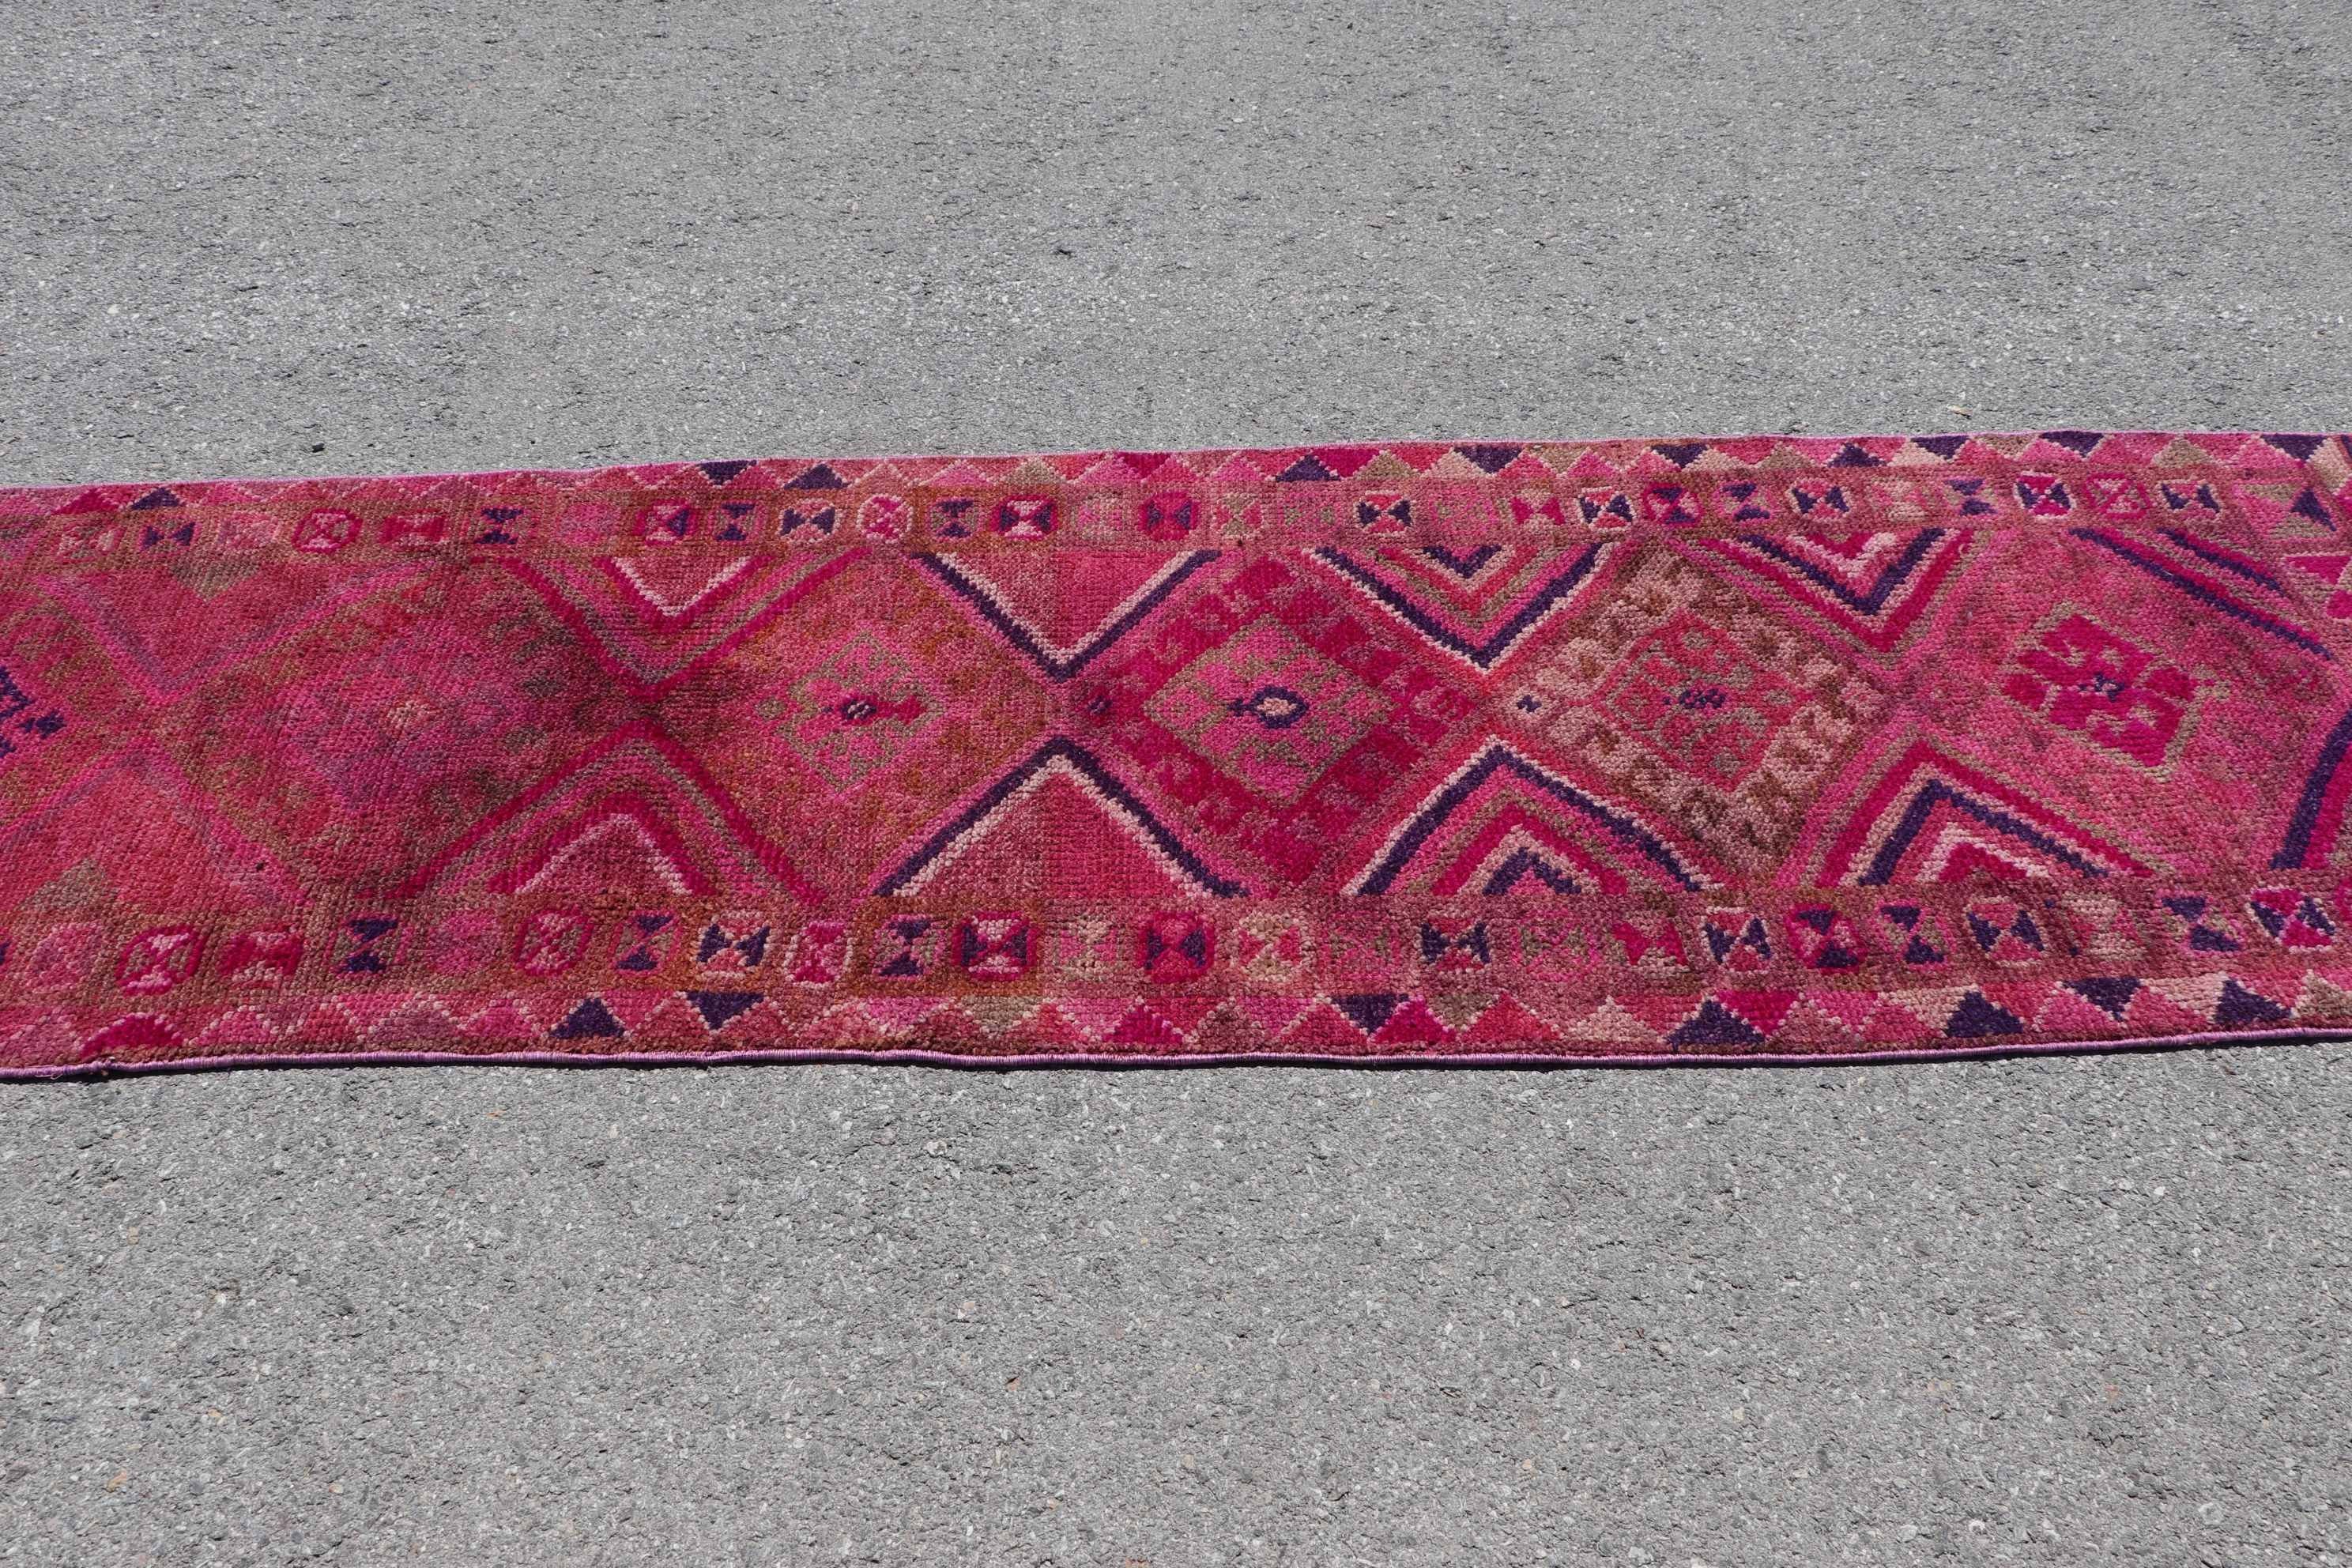 2.8x10.1 ft Runner Rug, Pink Moroccan Rug, Pastel Rugs, Hallway Rugs, Wool Rugs, Vintage Rug, Corridor Rugs, Turkish Rug, Home Decor Rug